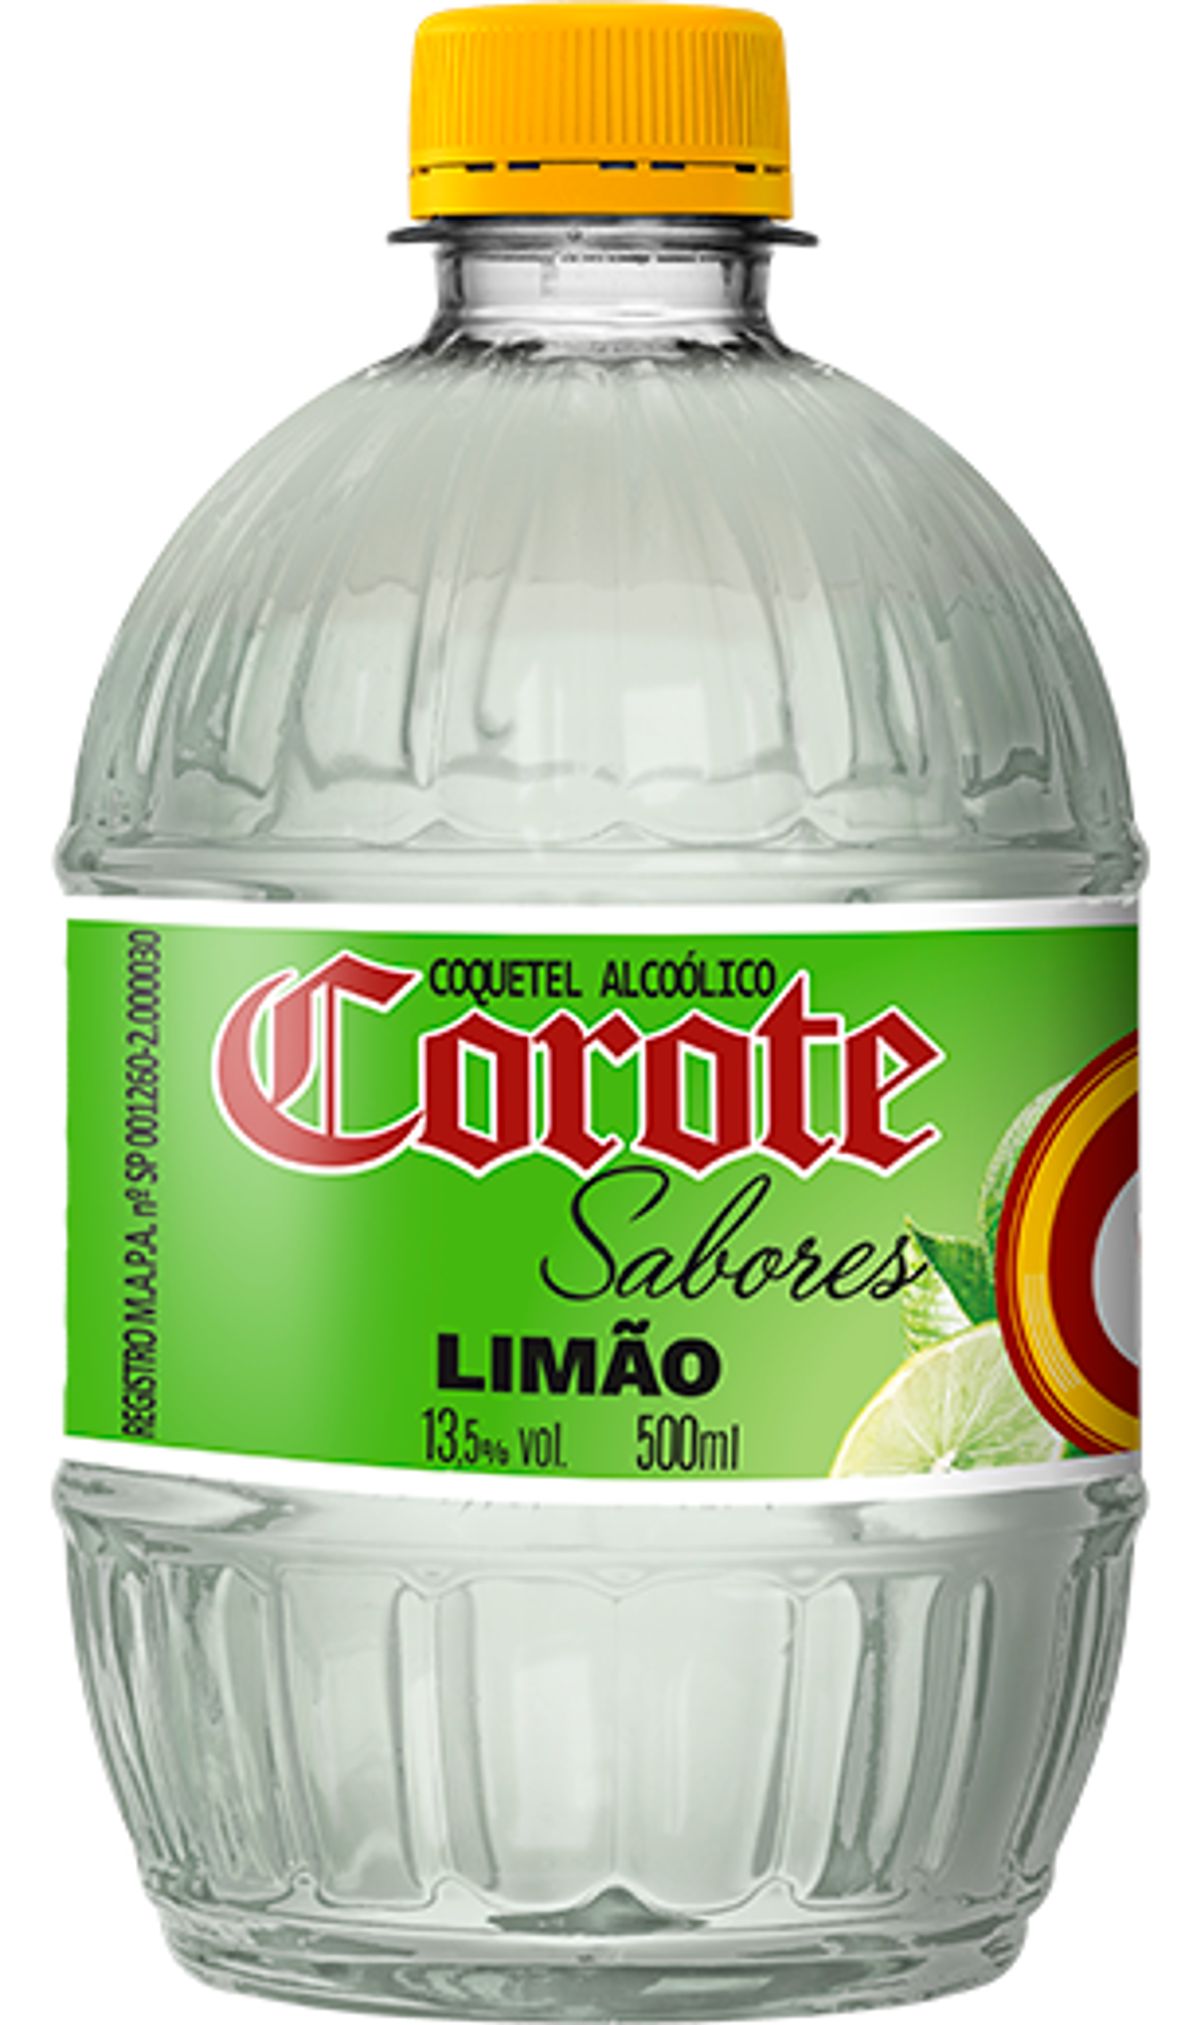 Coquetel Alcoólico Corote Limão 500ml